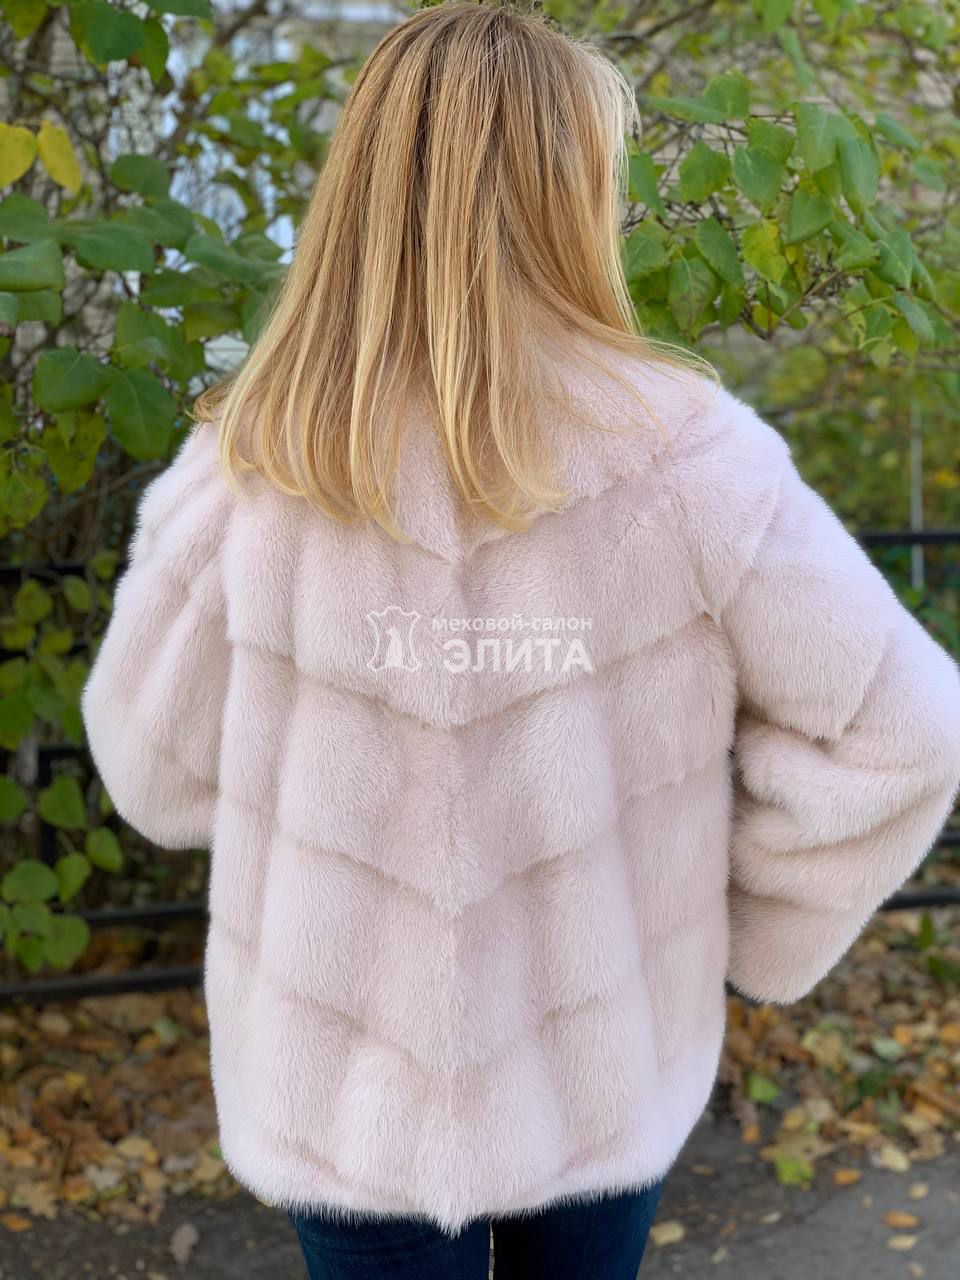 Куртка из норки S-12021, р-р 46-50, цена 75680 рублей в интернет-магазине кожи и меха ЭЛИТА. Вид 2